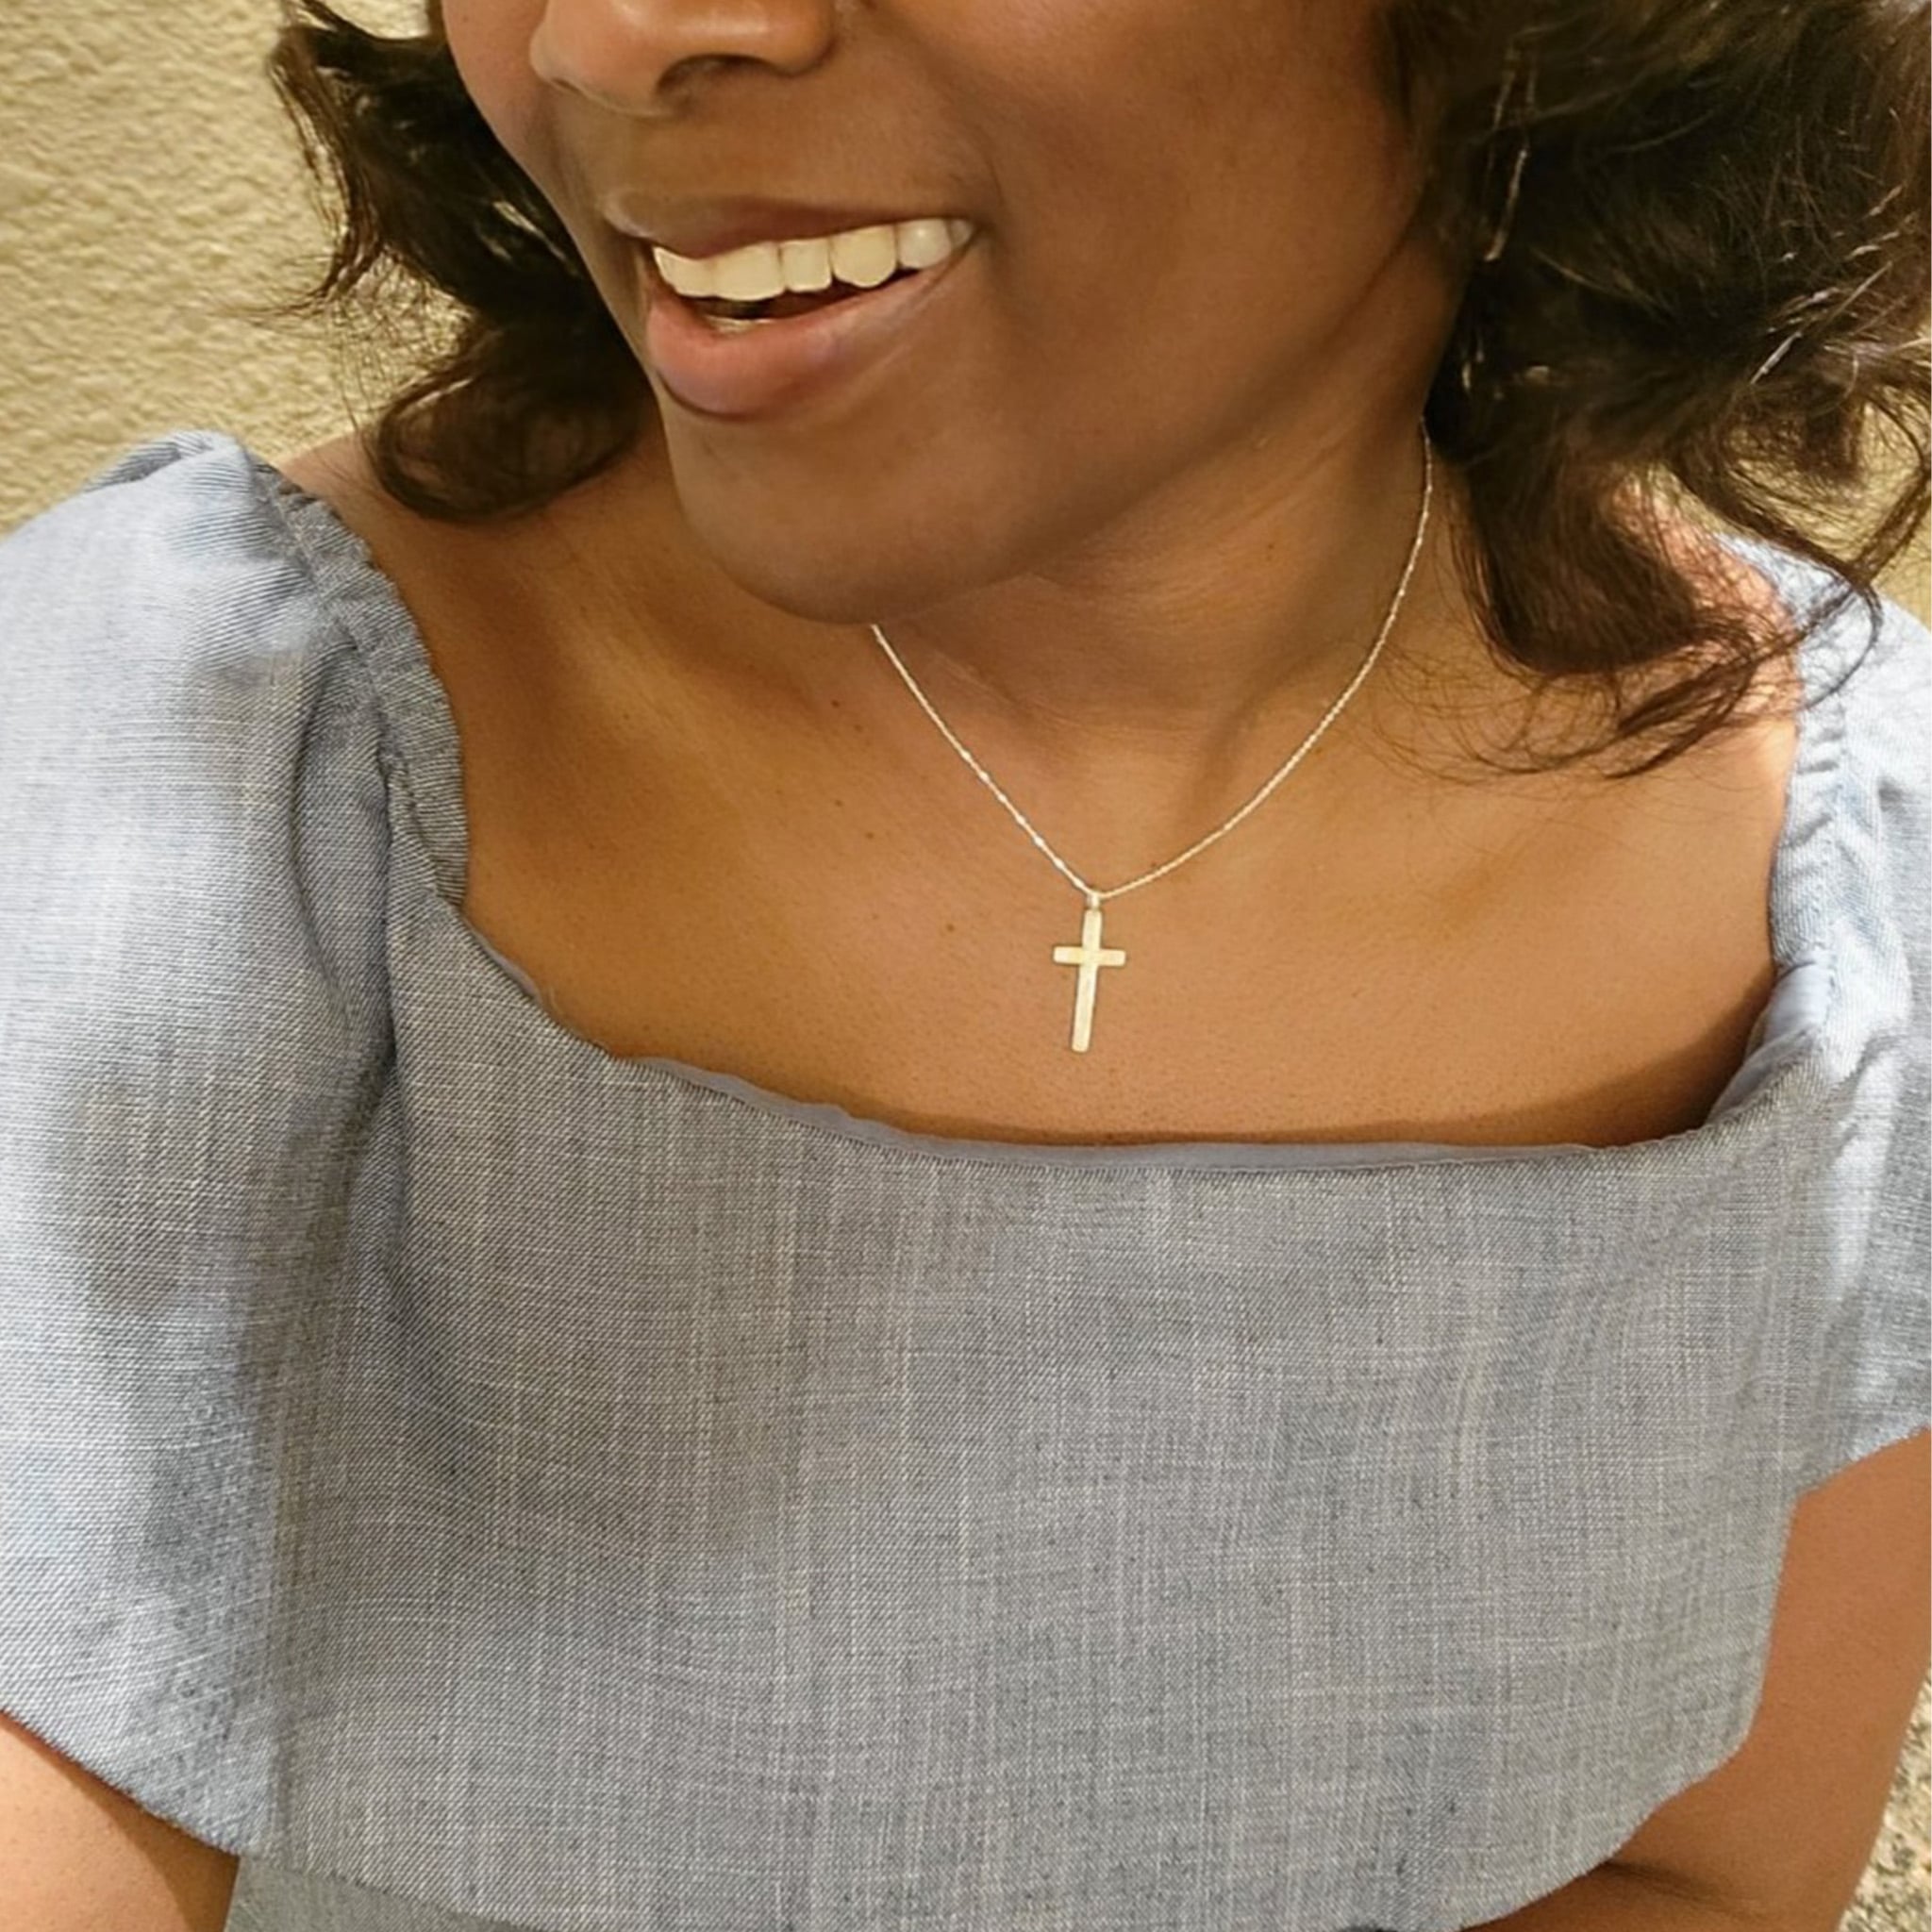 Demi-Fine Silver Cross Necklace